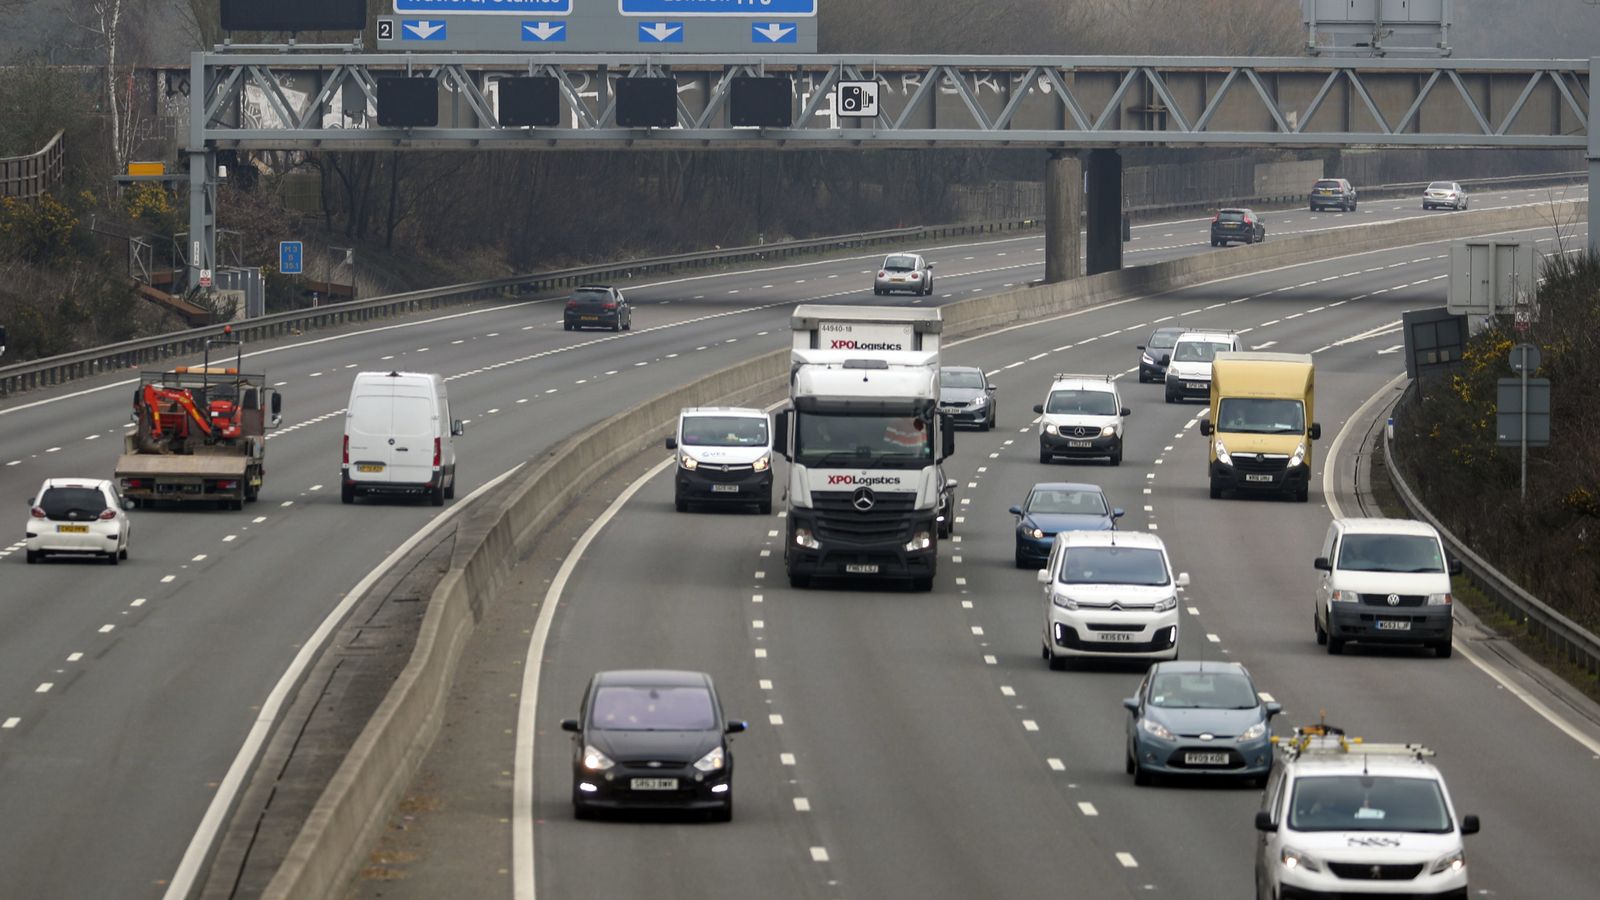 Badanie ujawnia najbardziej niezwykłe zachowanie kierowców w Wielkiej Brytanii |  Wiadomości z Wielkiej Brytanii